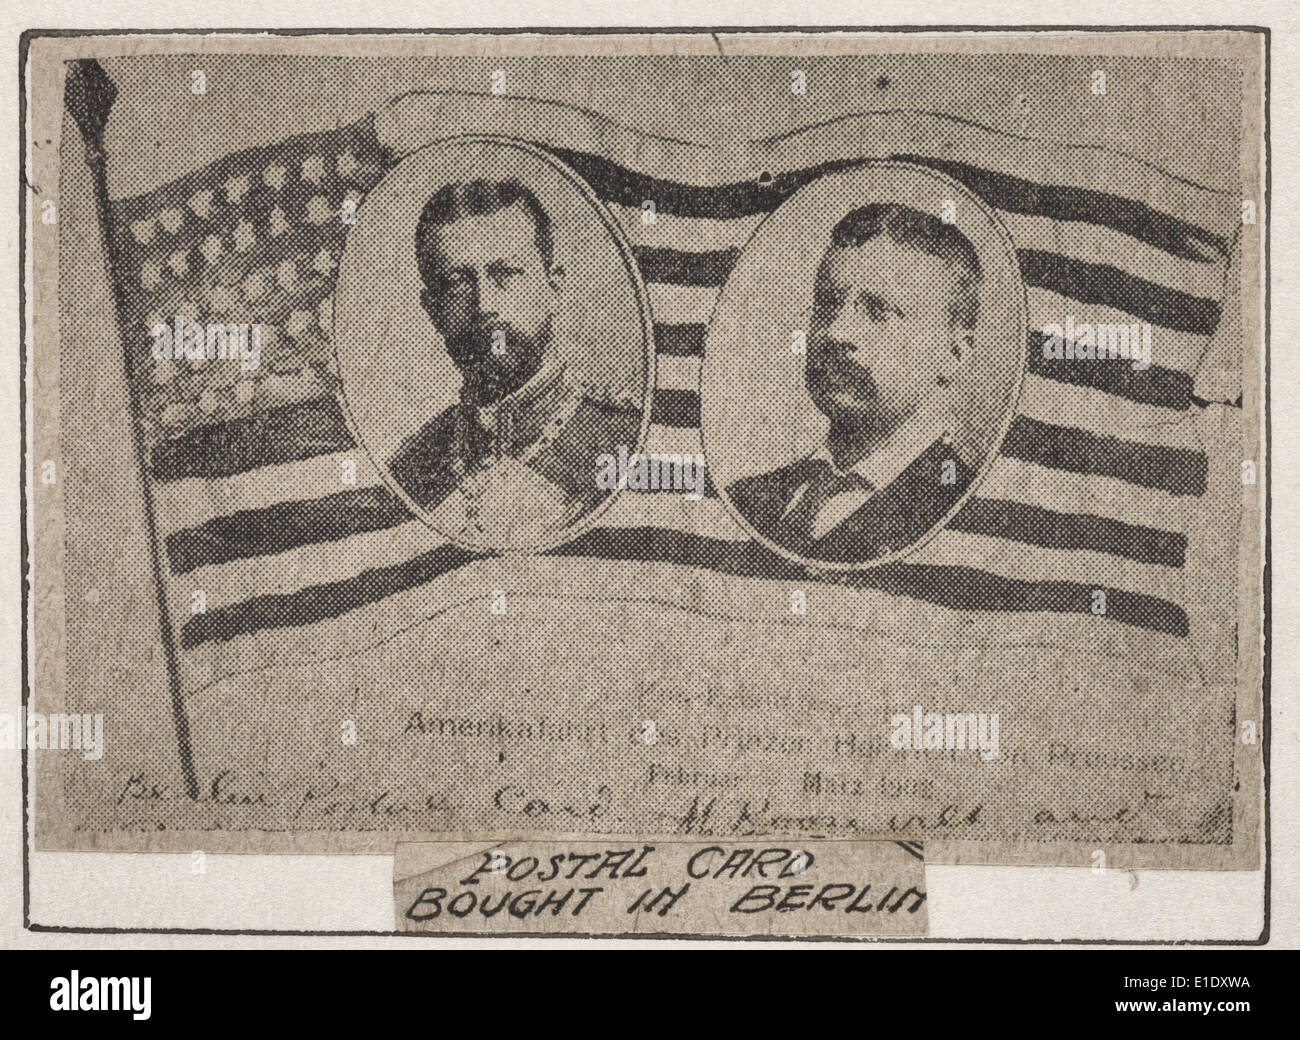 Carte postale acheté à Berlin. Imprimer (probablement une coupure de presse) montrant des portraits de président Theodore Roosevelt et le Prince Henry de Prusse sur le drapeau américain, vers 1905 Banque D'Images